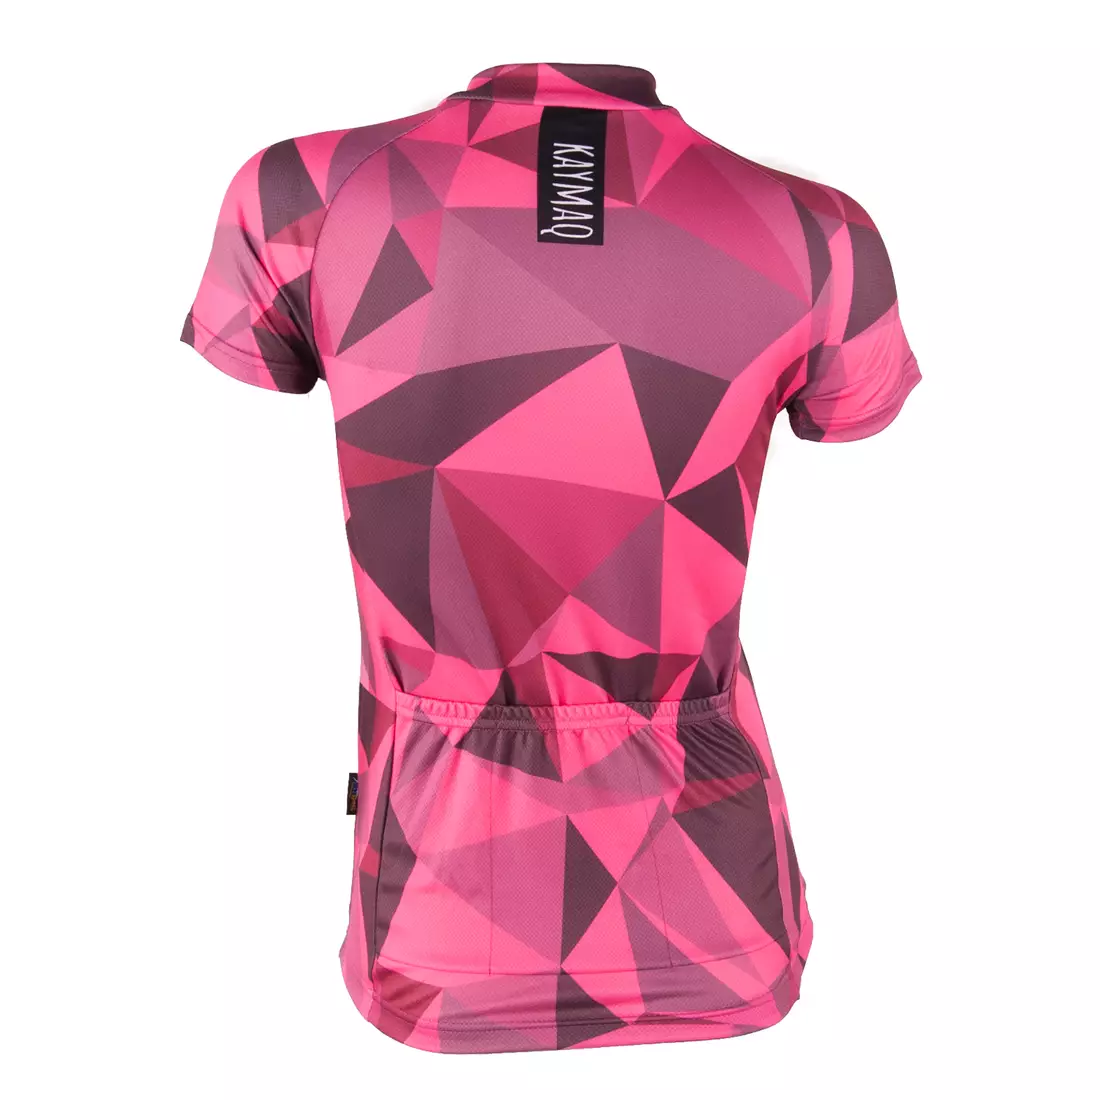 KAYMAQ RPS women's cycling jersey, pink